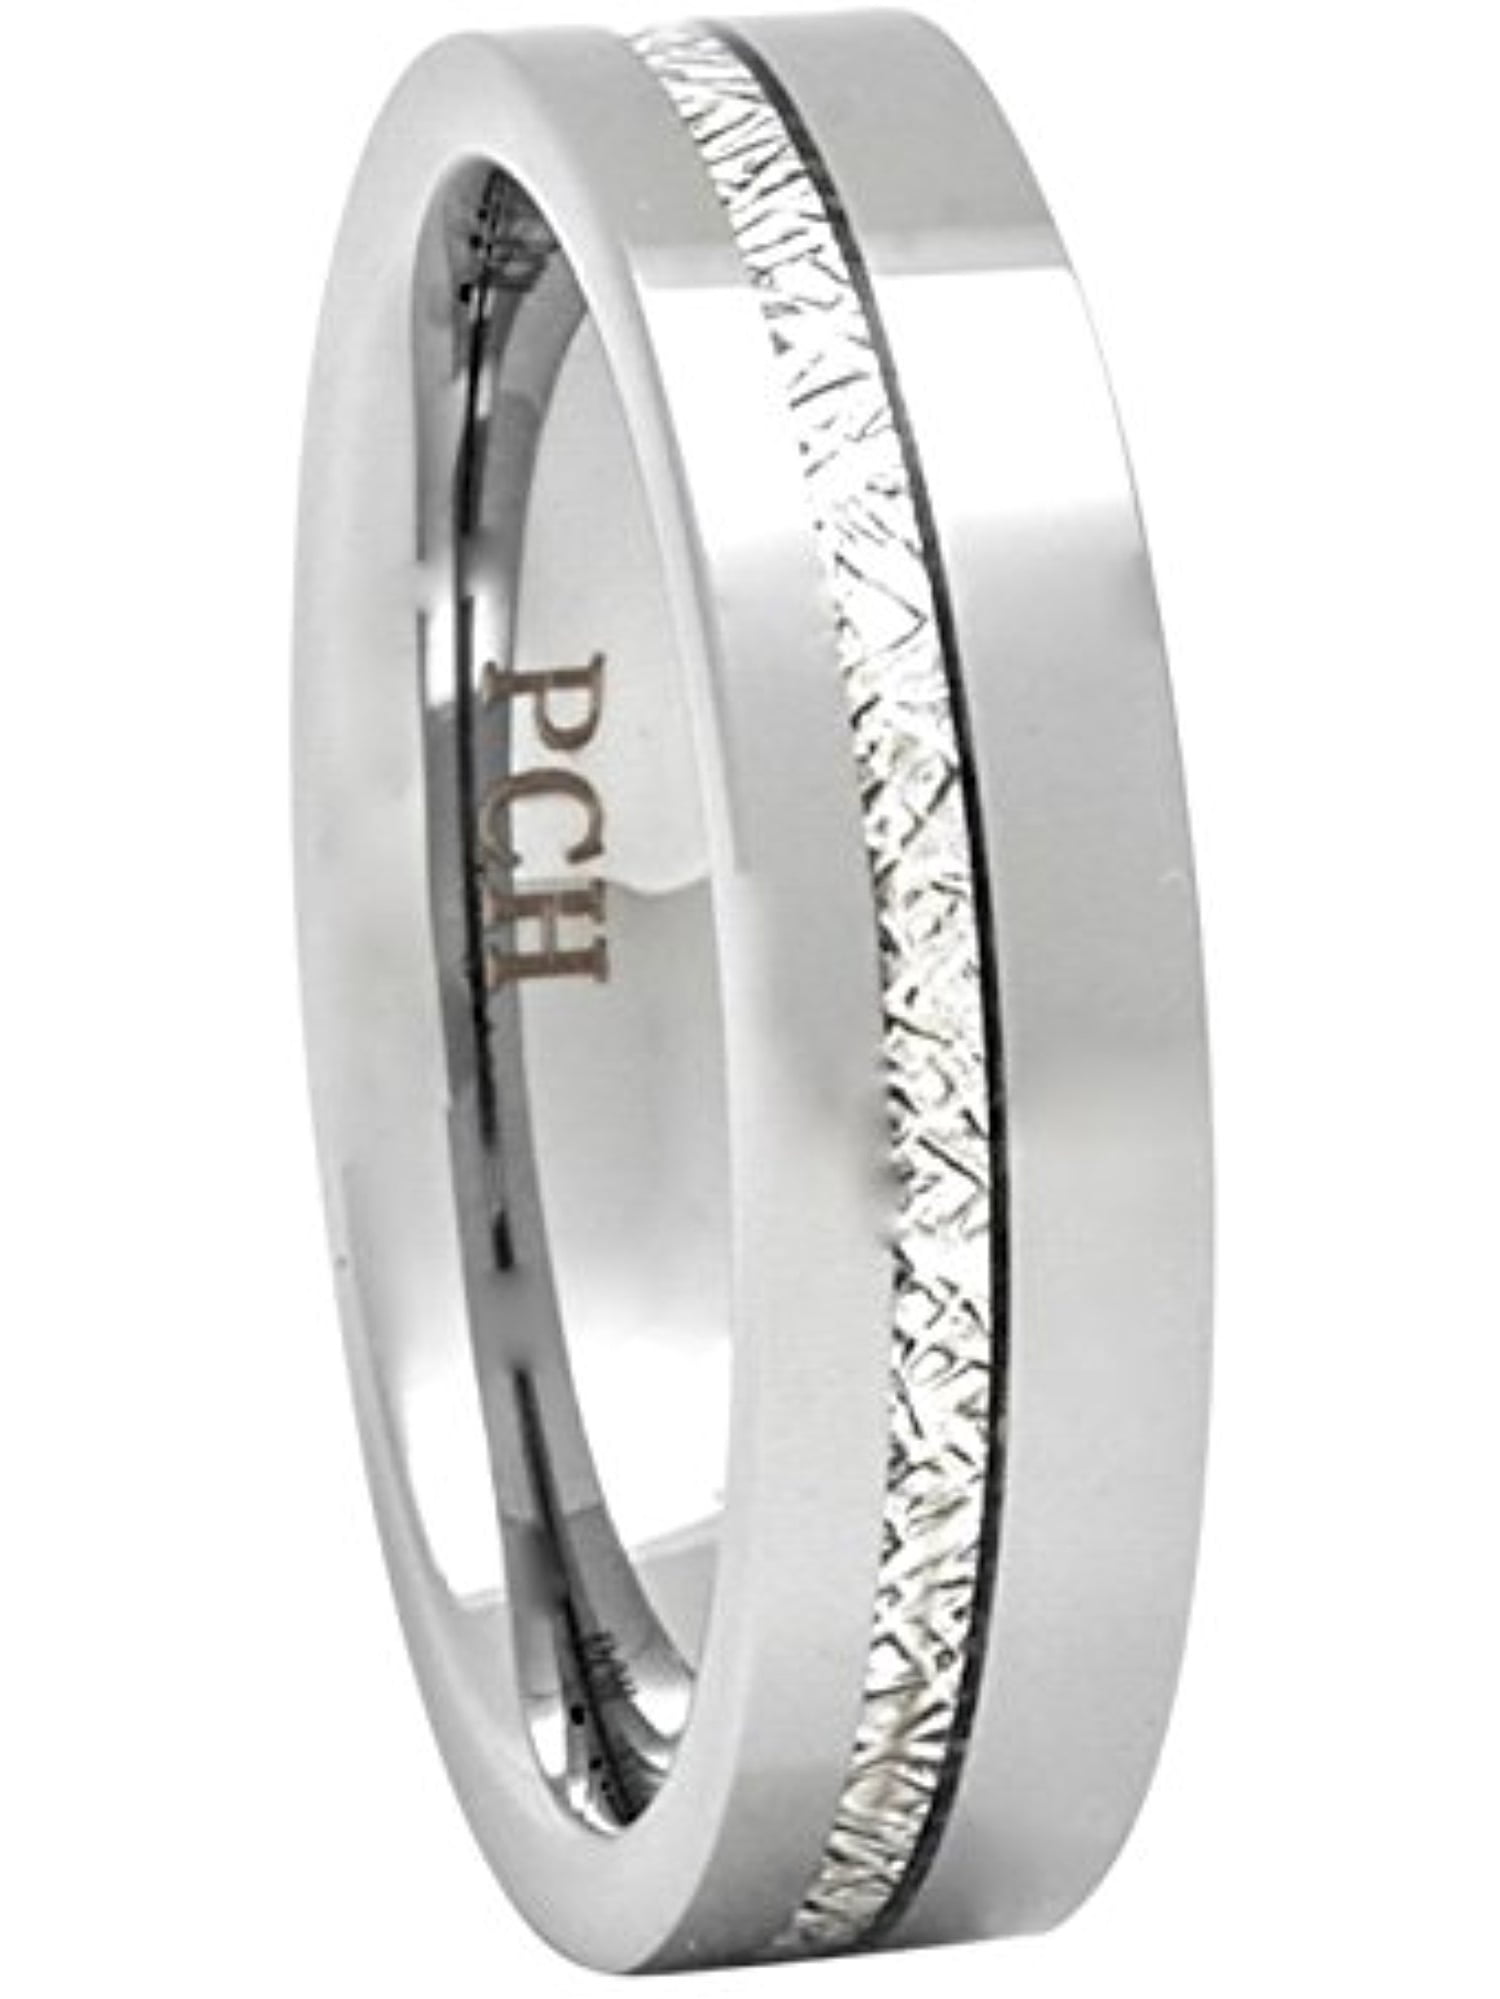 Tungsten Carbide Matching Rings for Women Men Meteorite Inlay Wedding Band Ring 